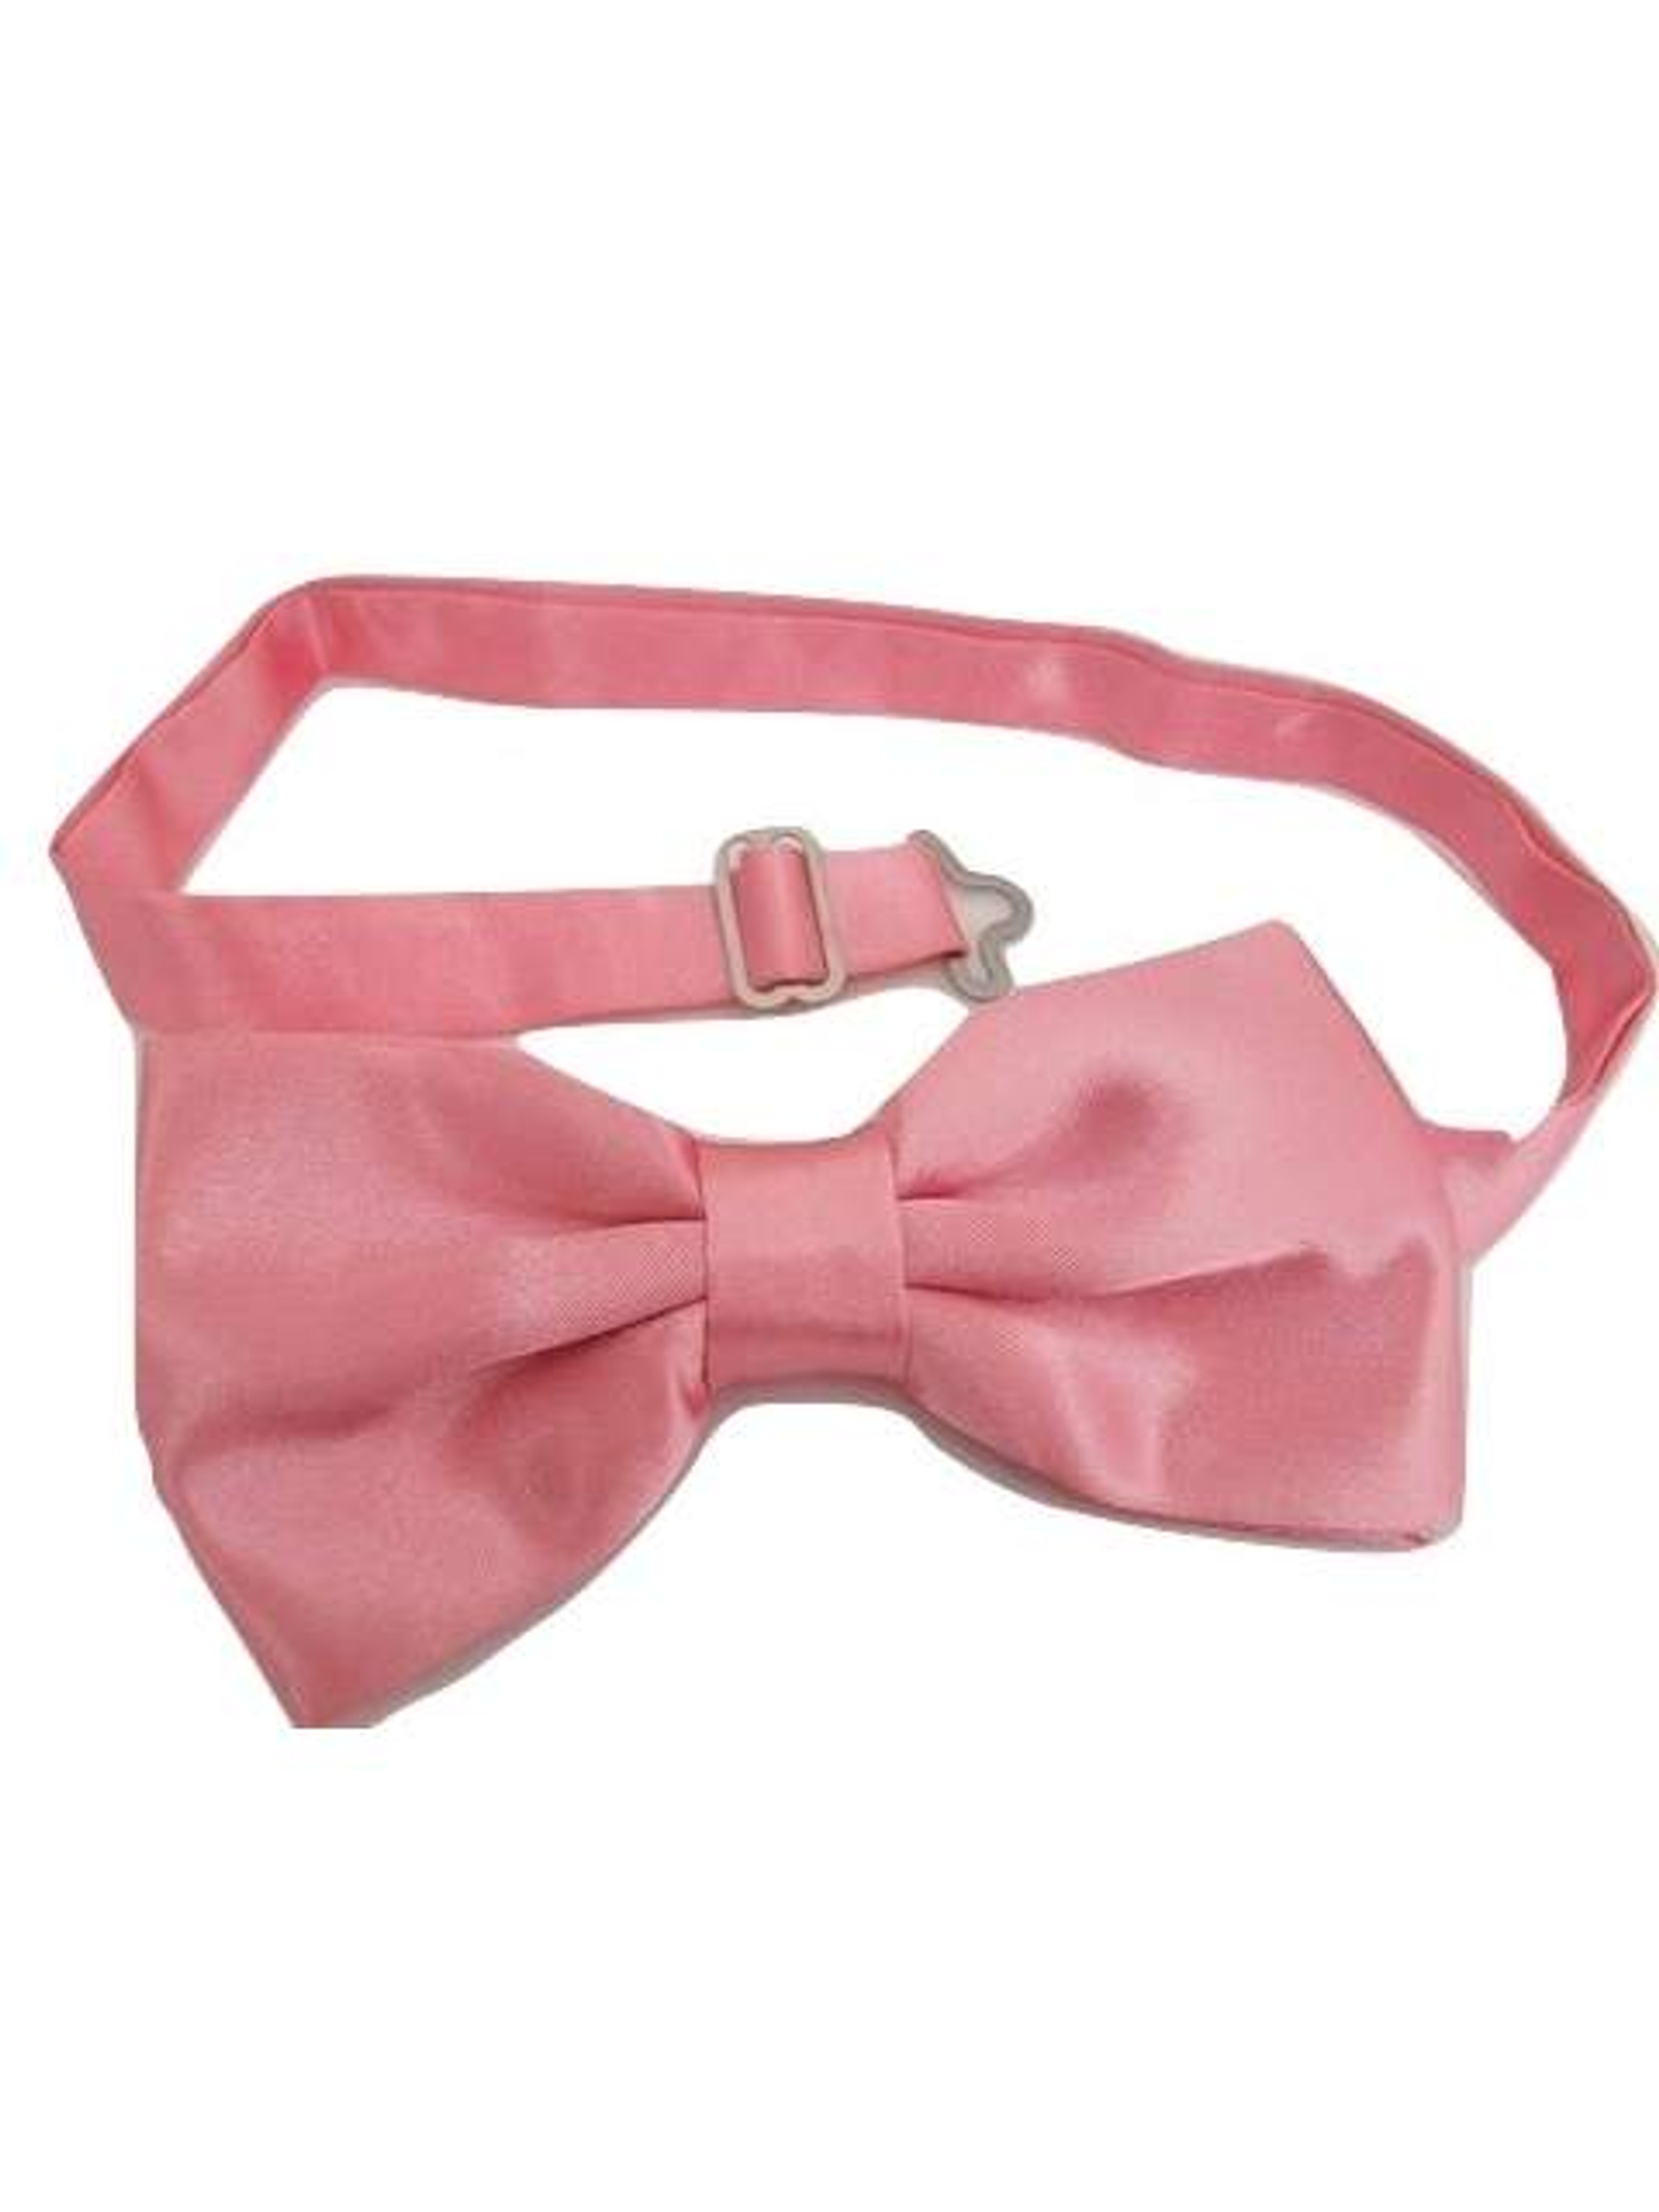 Men's Pink Bow Tie Satin NEW - Tweedmans